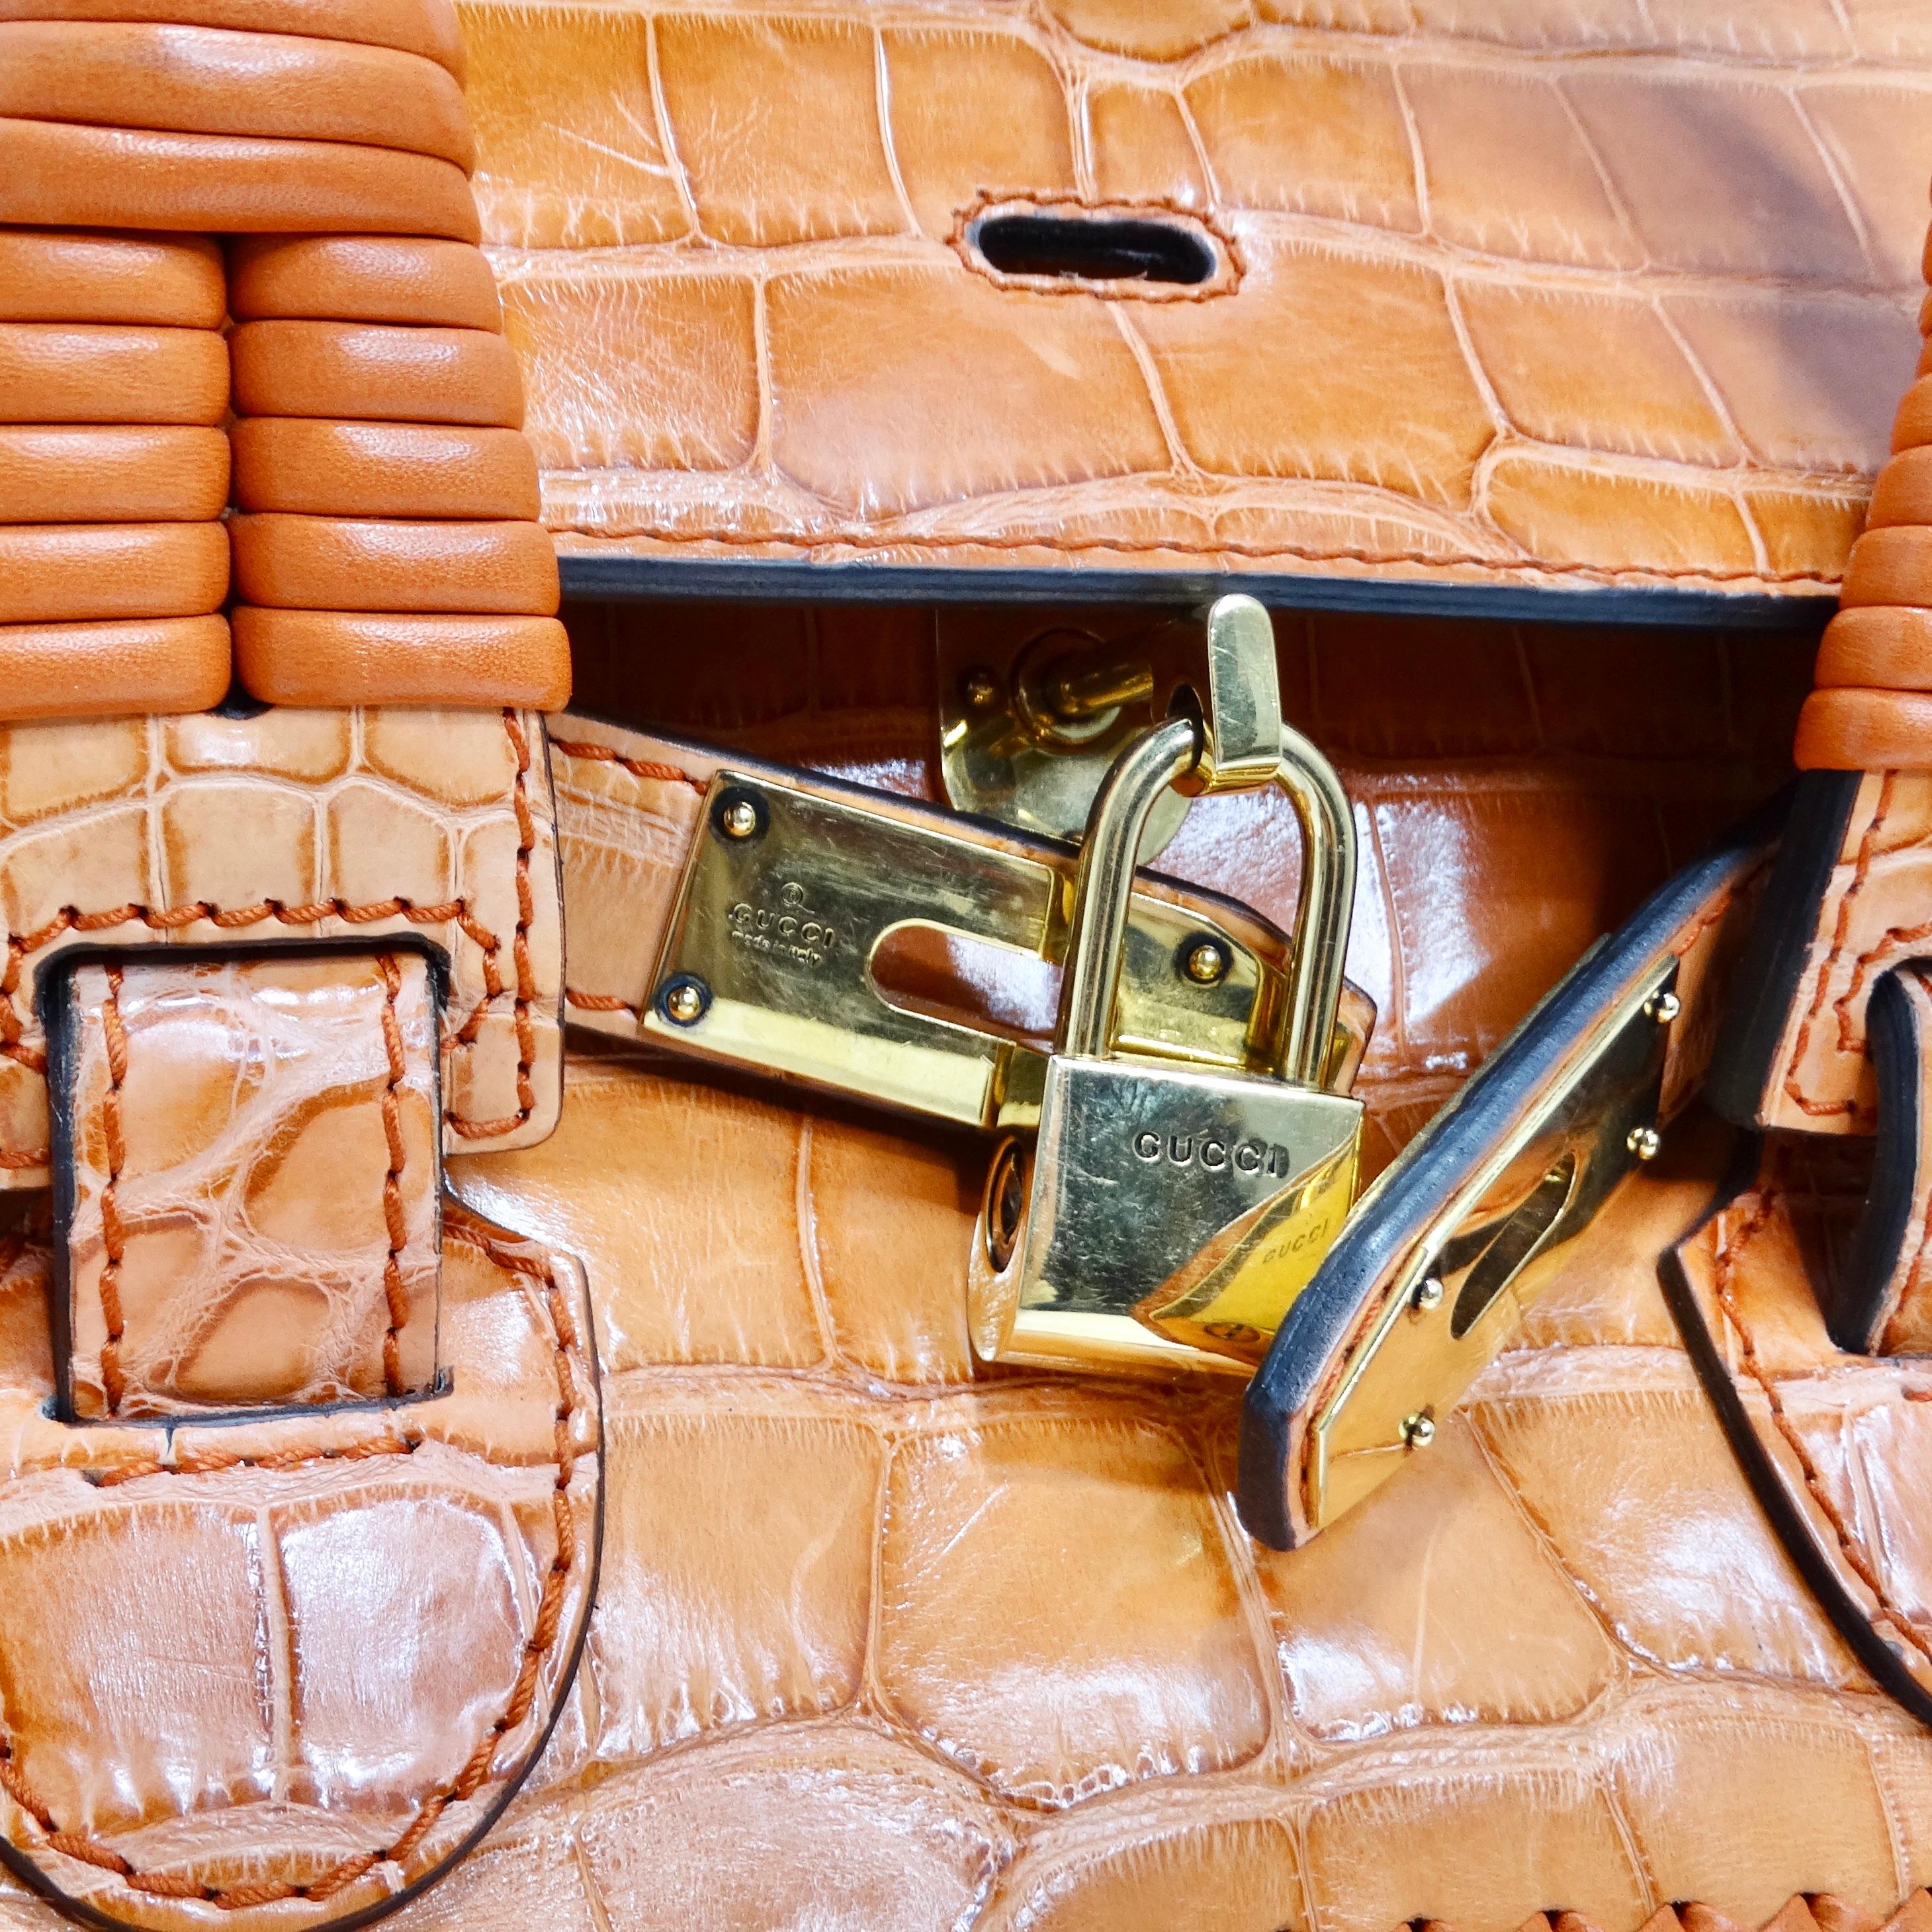 Die Gucci Rare Orange Crocodile Leather Woven Top Handle Bag ist ein umwerfendes und exklusives Stück, das Luxus und Raffinesse ausstrahlt. Diese elegante Tasche aus orangefarbenem Krokodilleder verfügt über exquisite, handgeflochtene Details, die